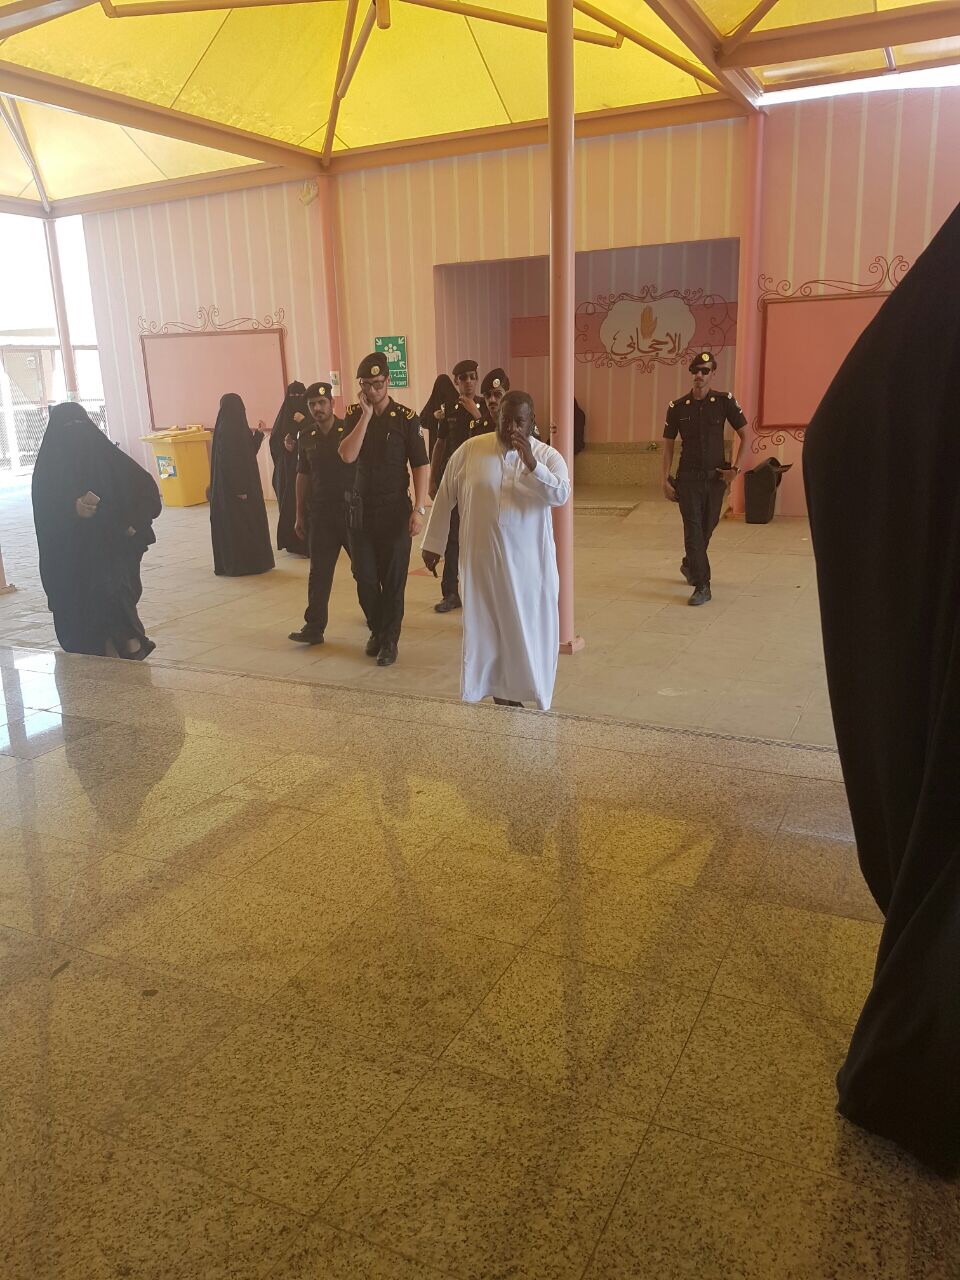 قصة مريبة لسيدة تدخل مدرسة في الرياض وخرجت تاركةً كيسًا بلاستيكيًّا!